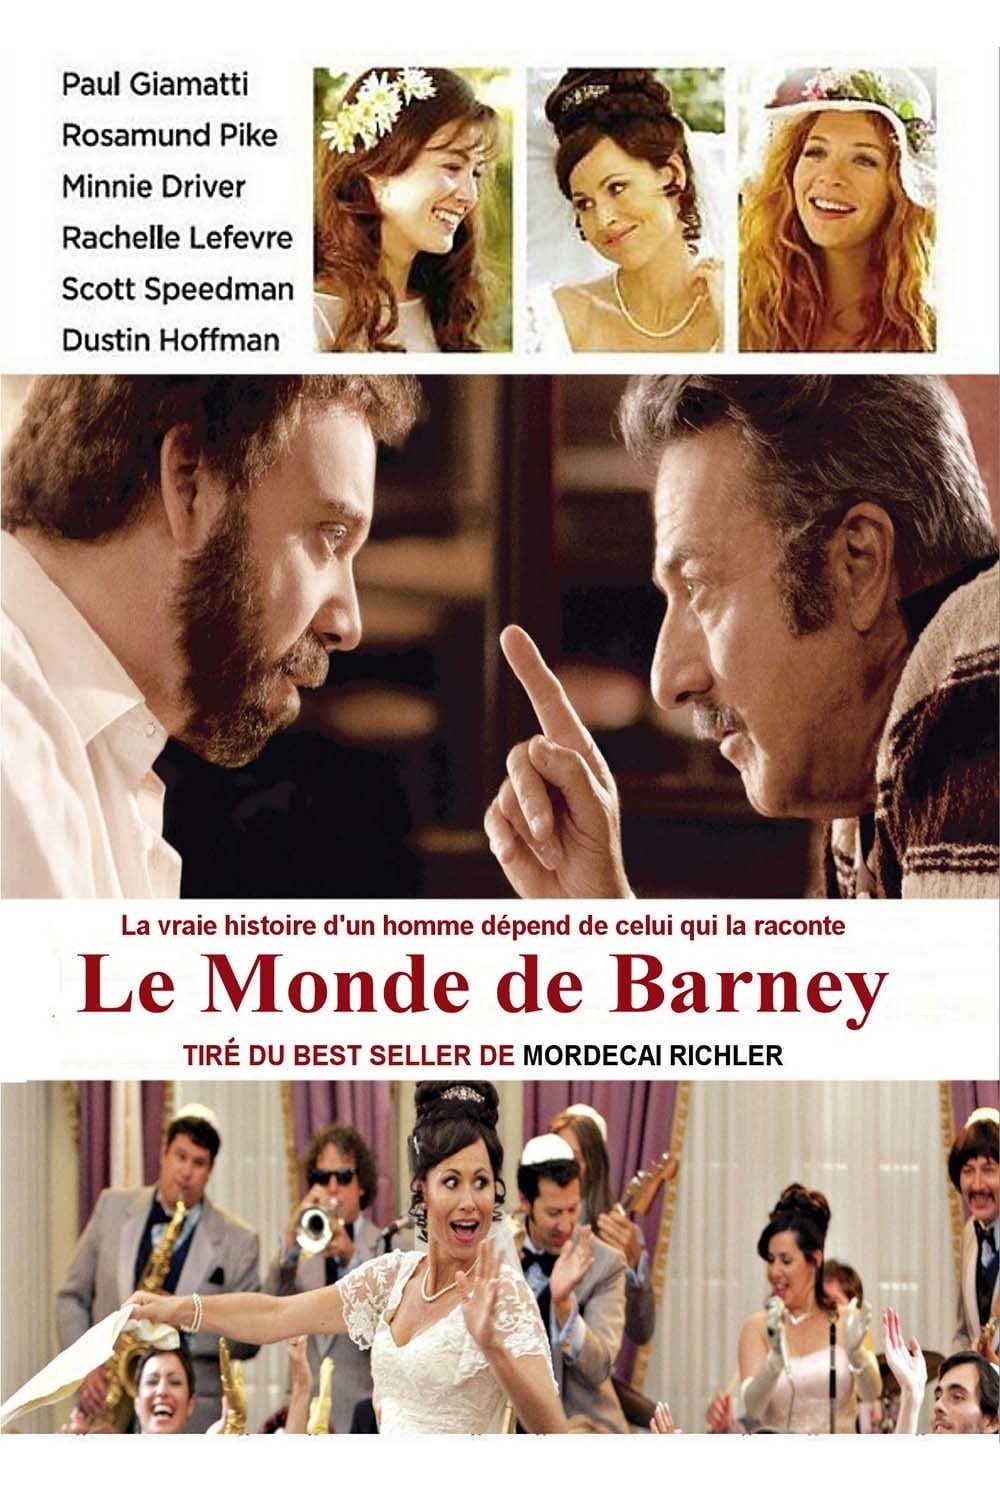 Le Monde de Barney est-il disponible sur Netflix ou autre ?